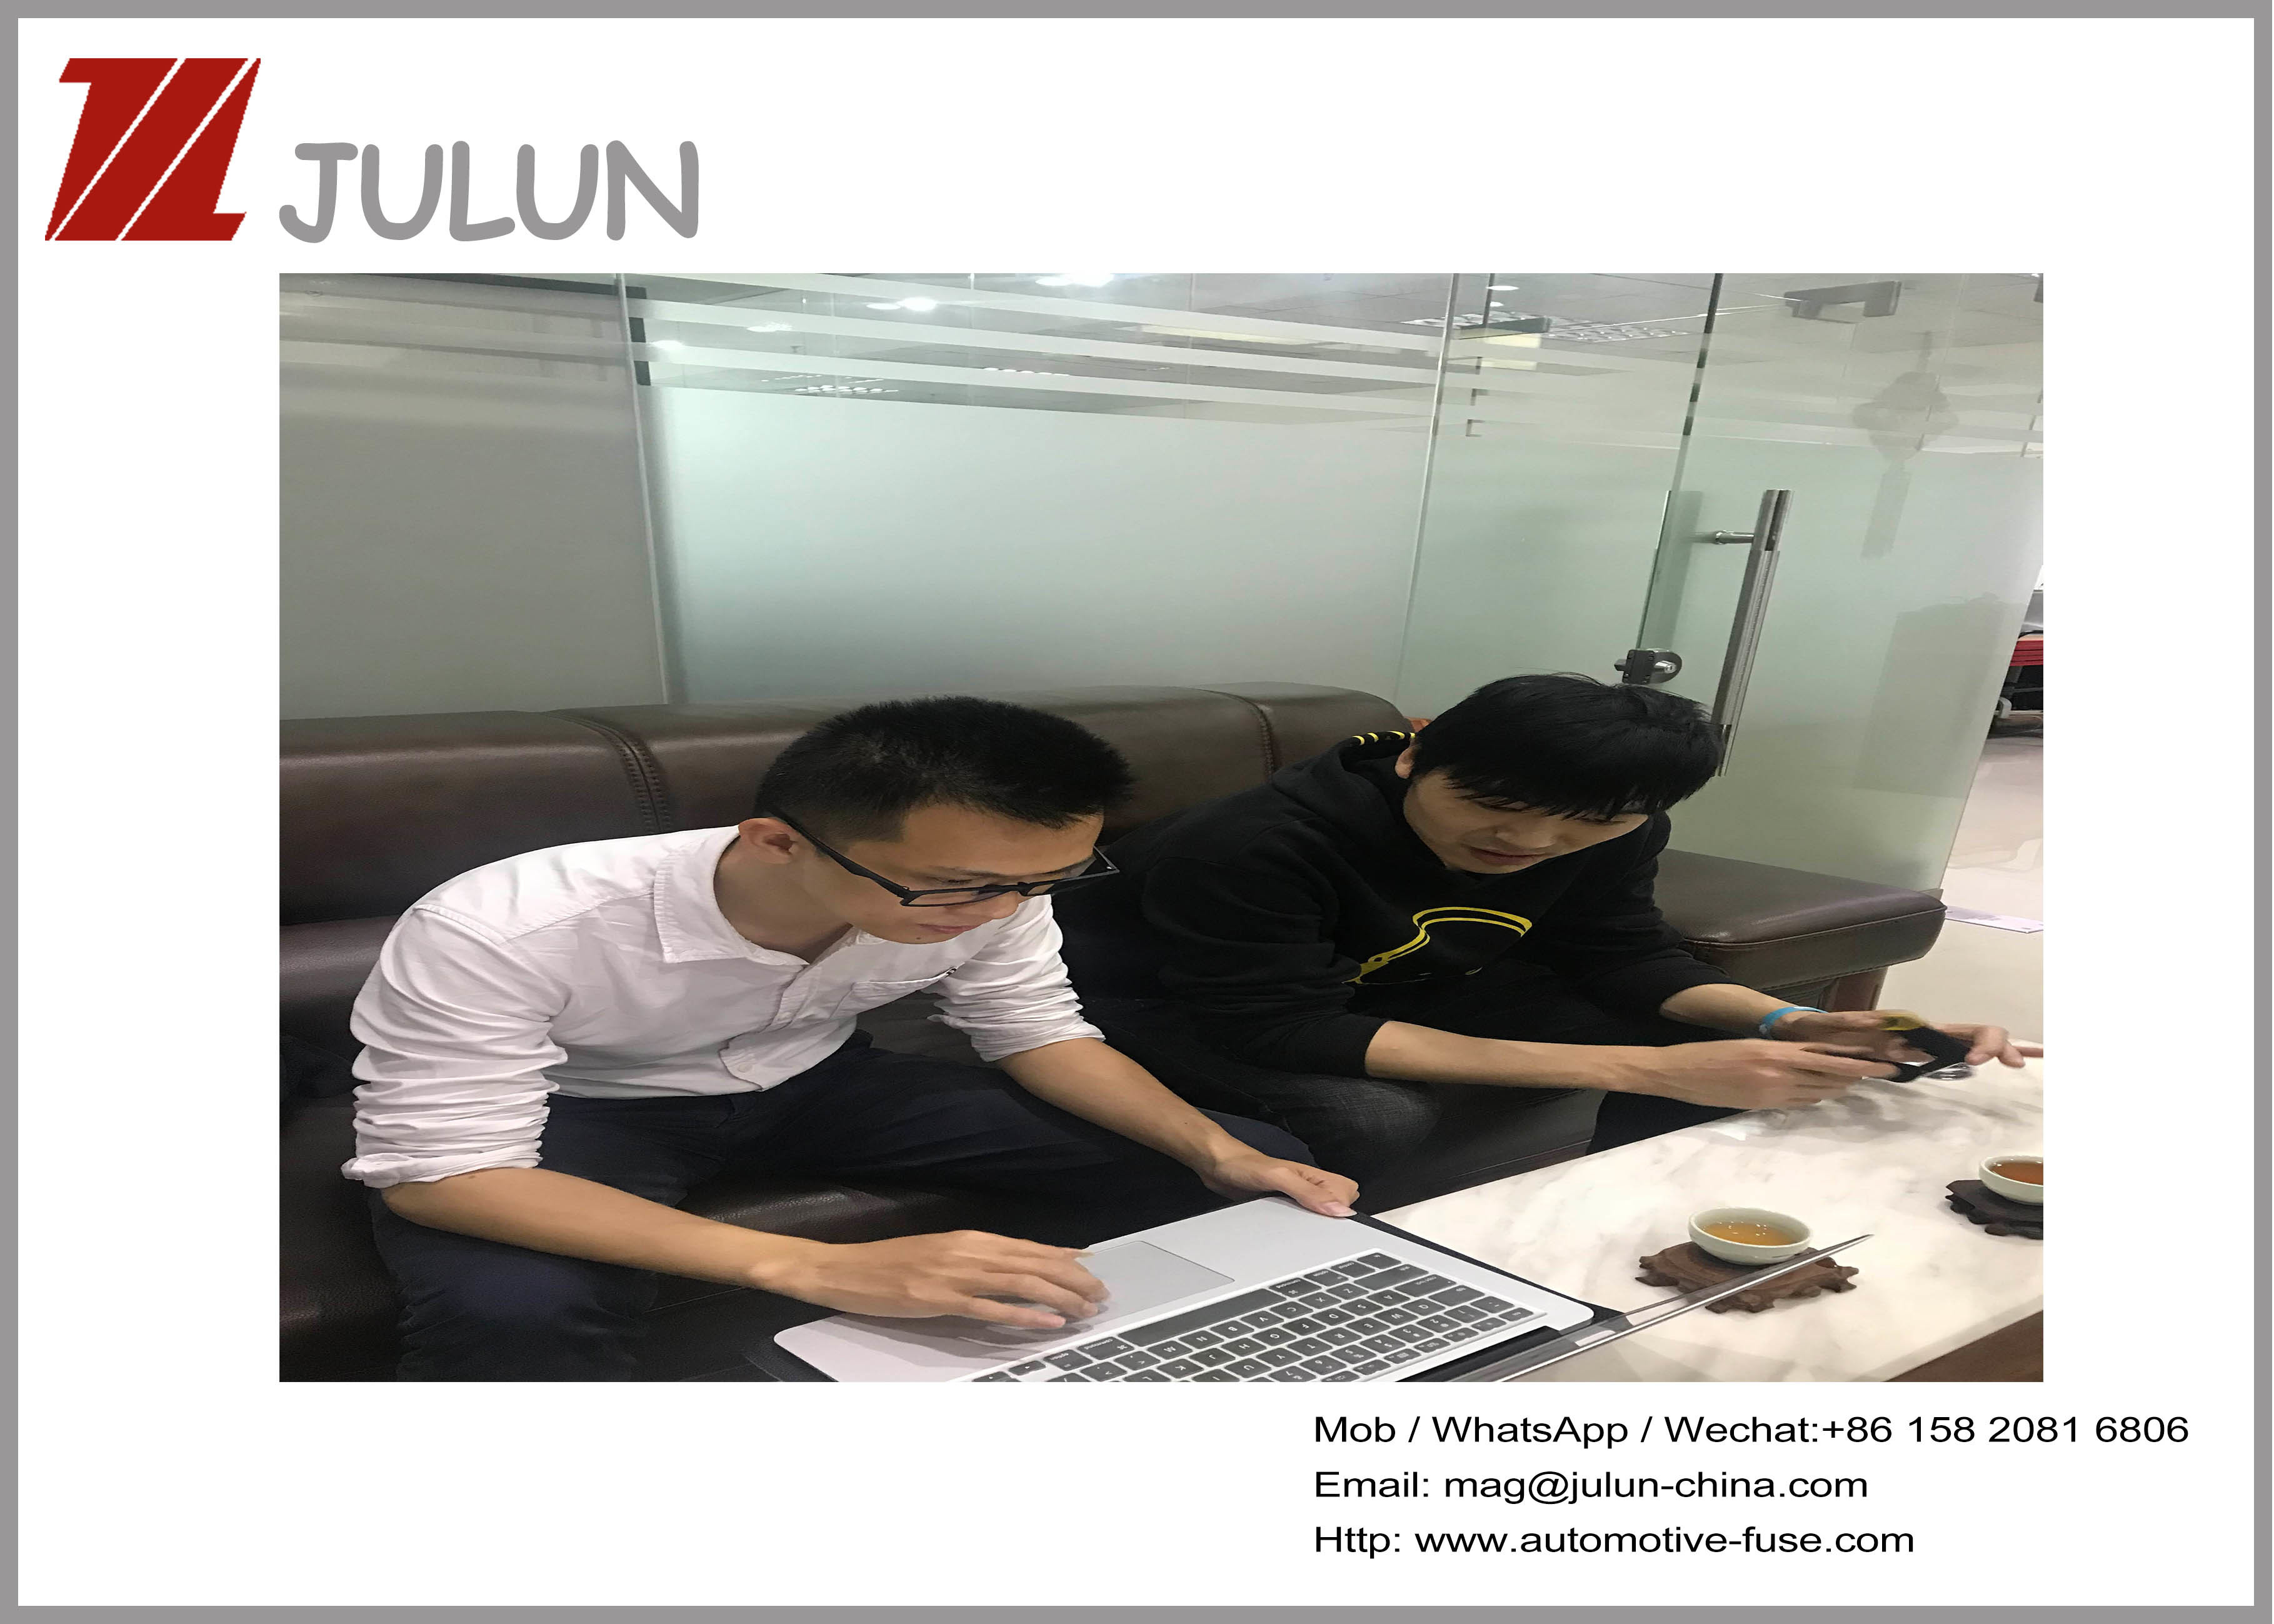 چین JULUN (H.K)CO.,LTD (DONGGUAN JULUN ELECTRONICS CO.,LTD) نمایه شرکت